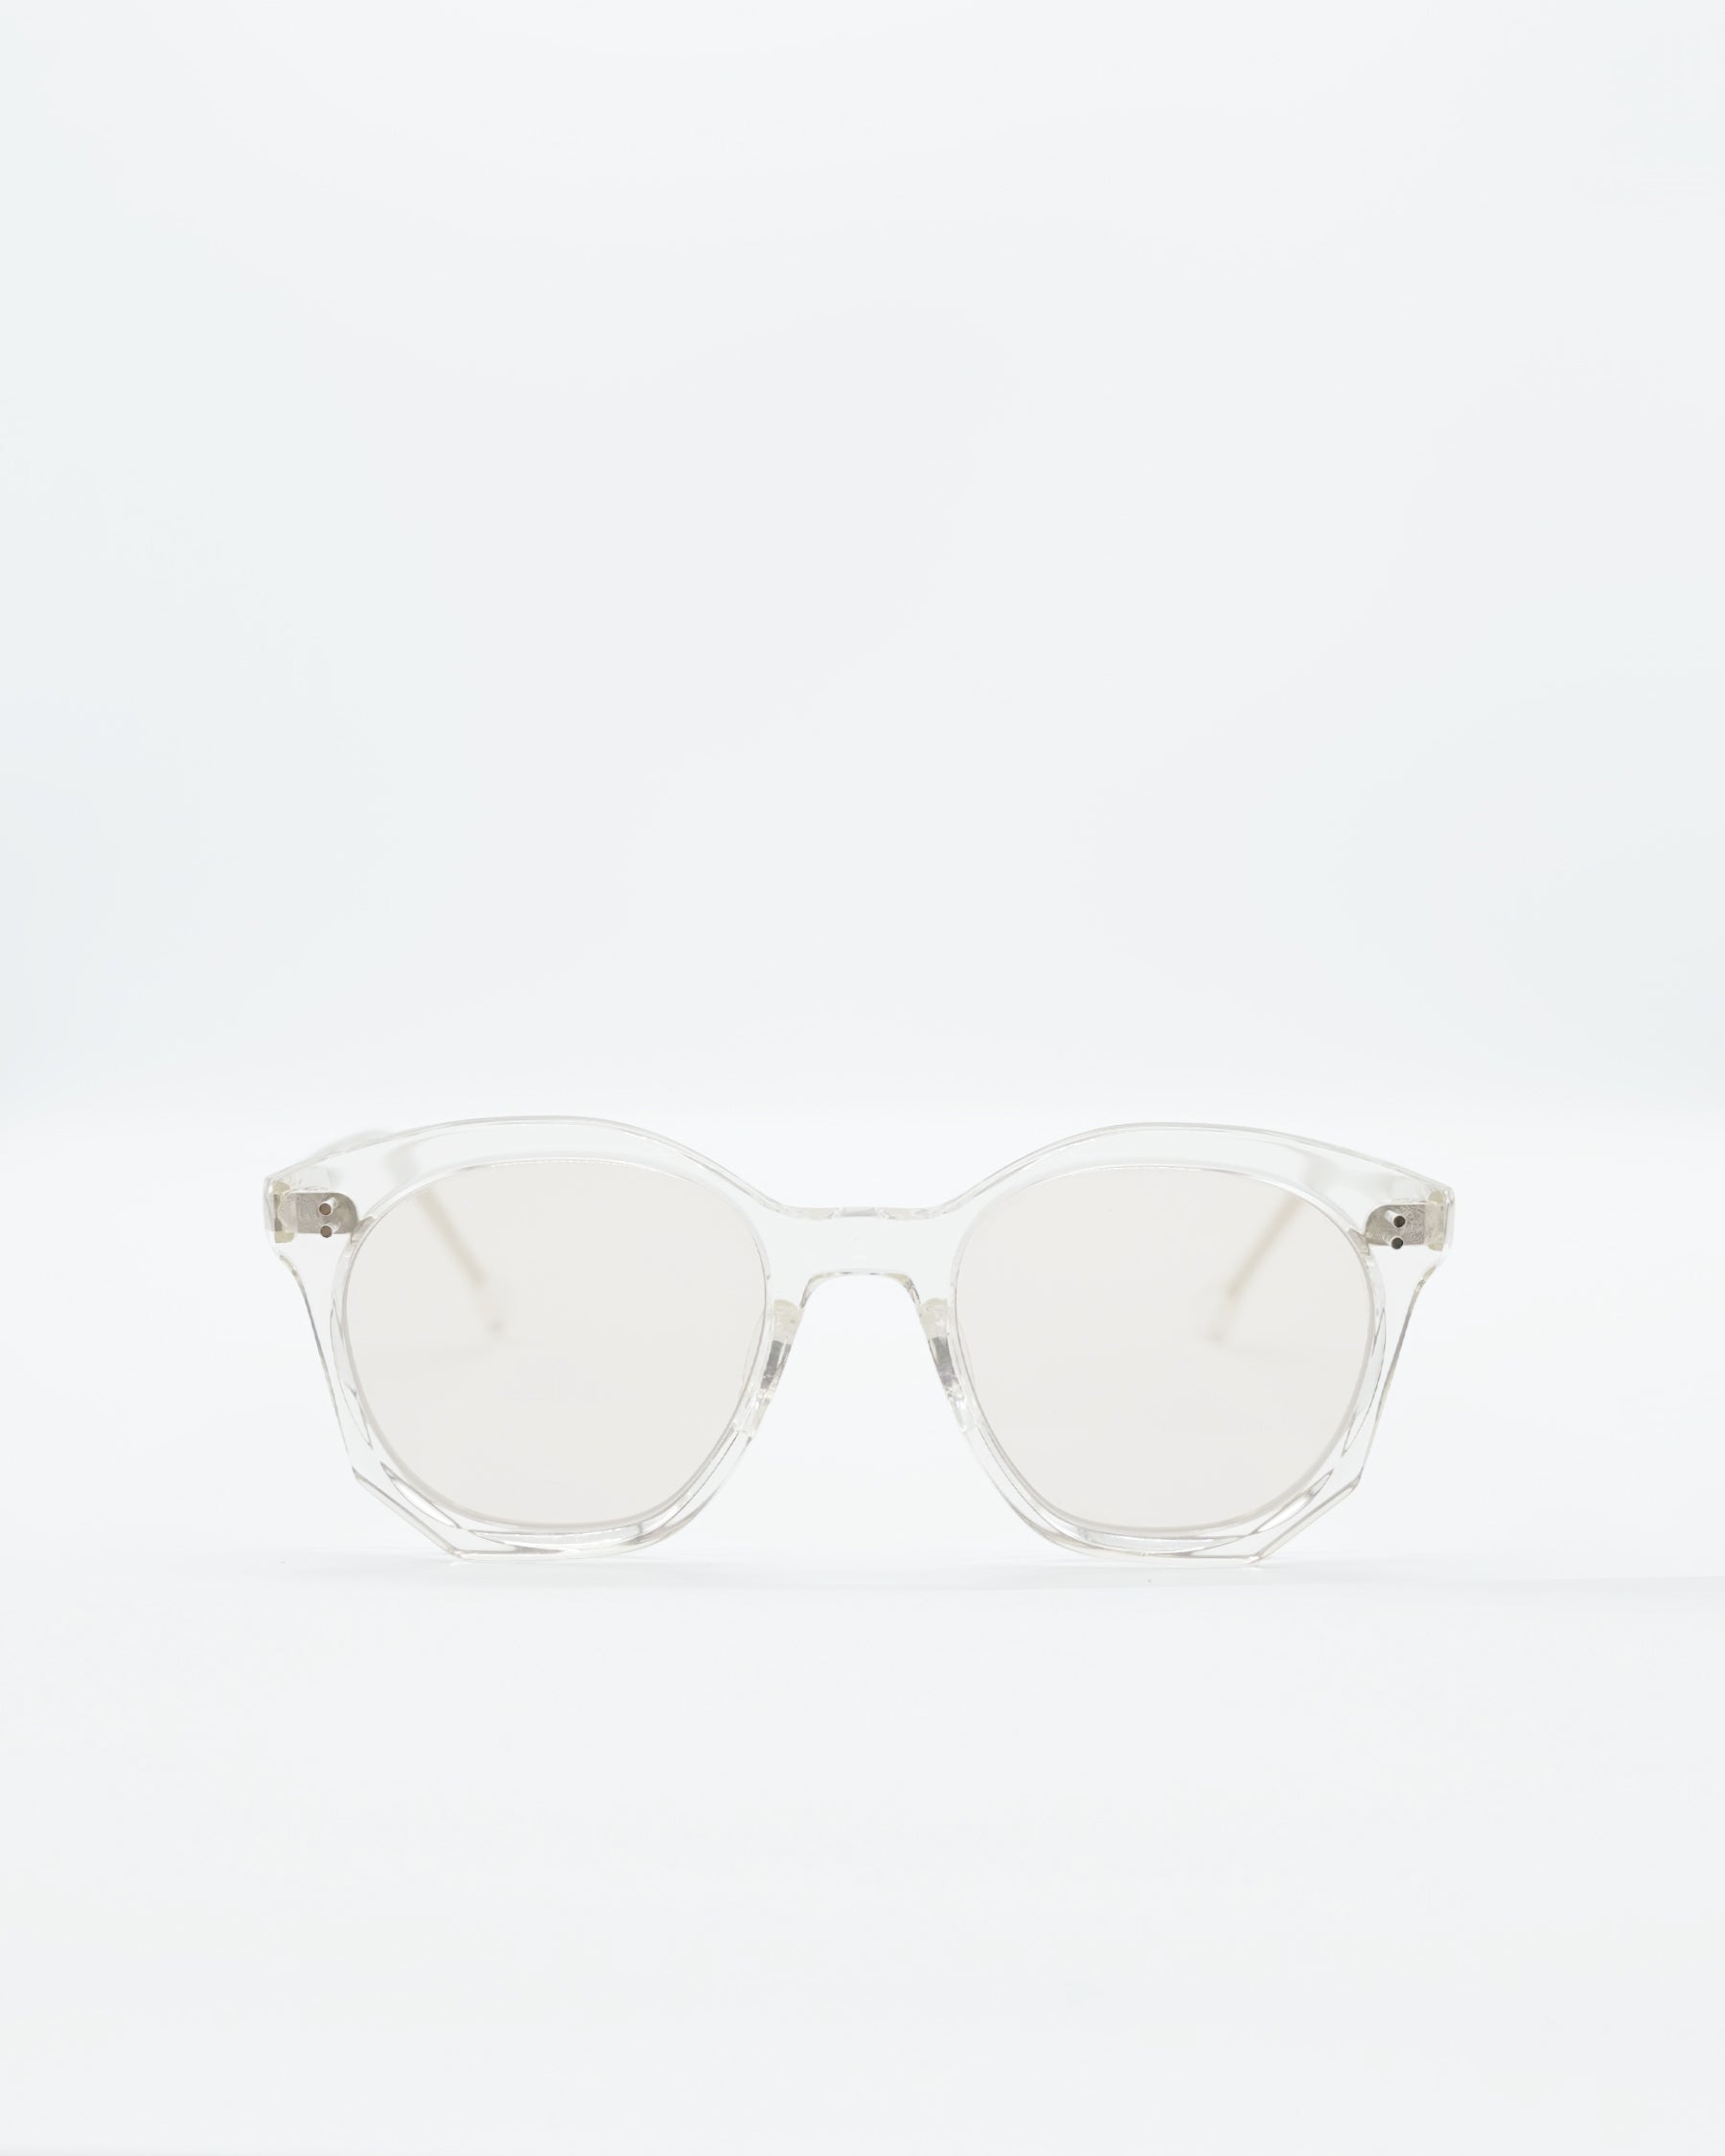 gp-04 Sunglasses crystal